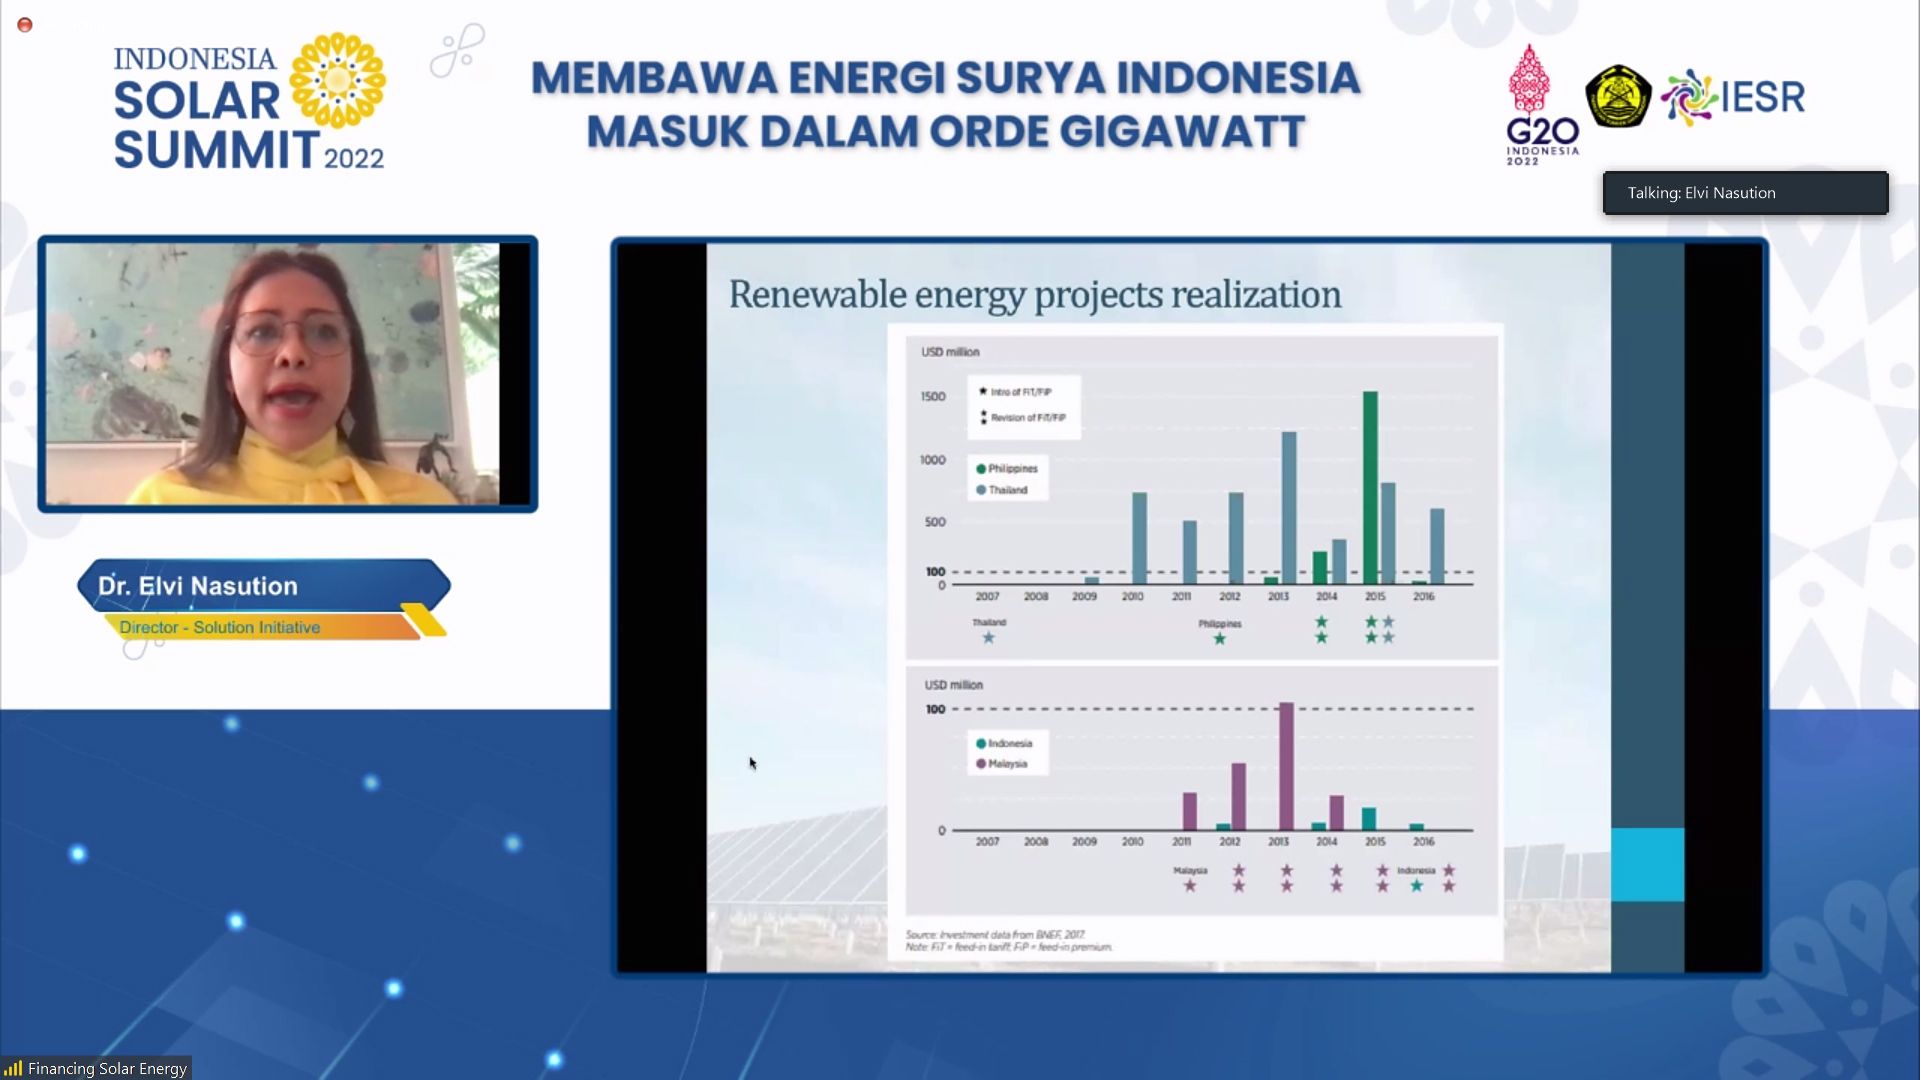 Workshop Financing Solar Energy - Indonesia Solar Summit